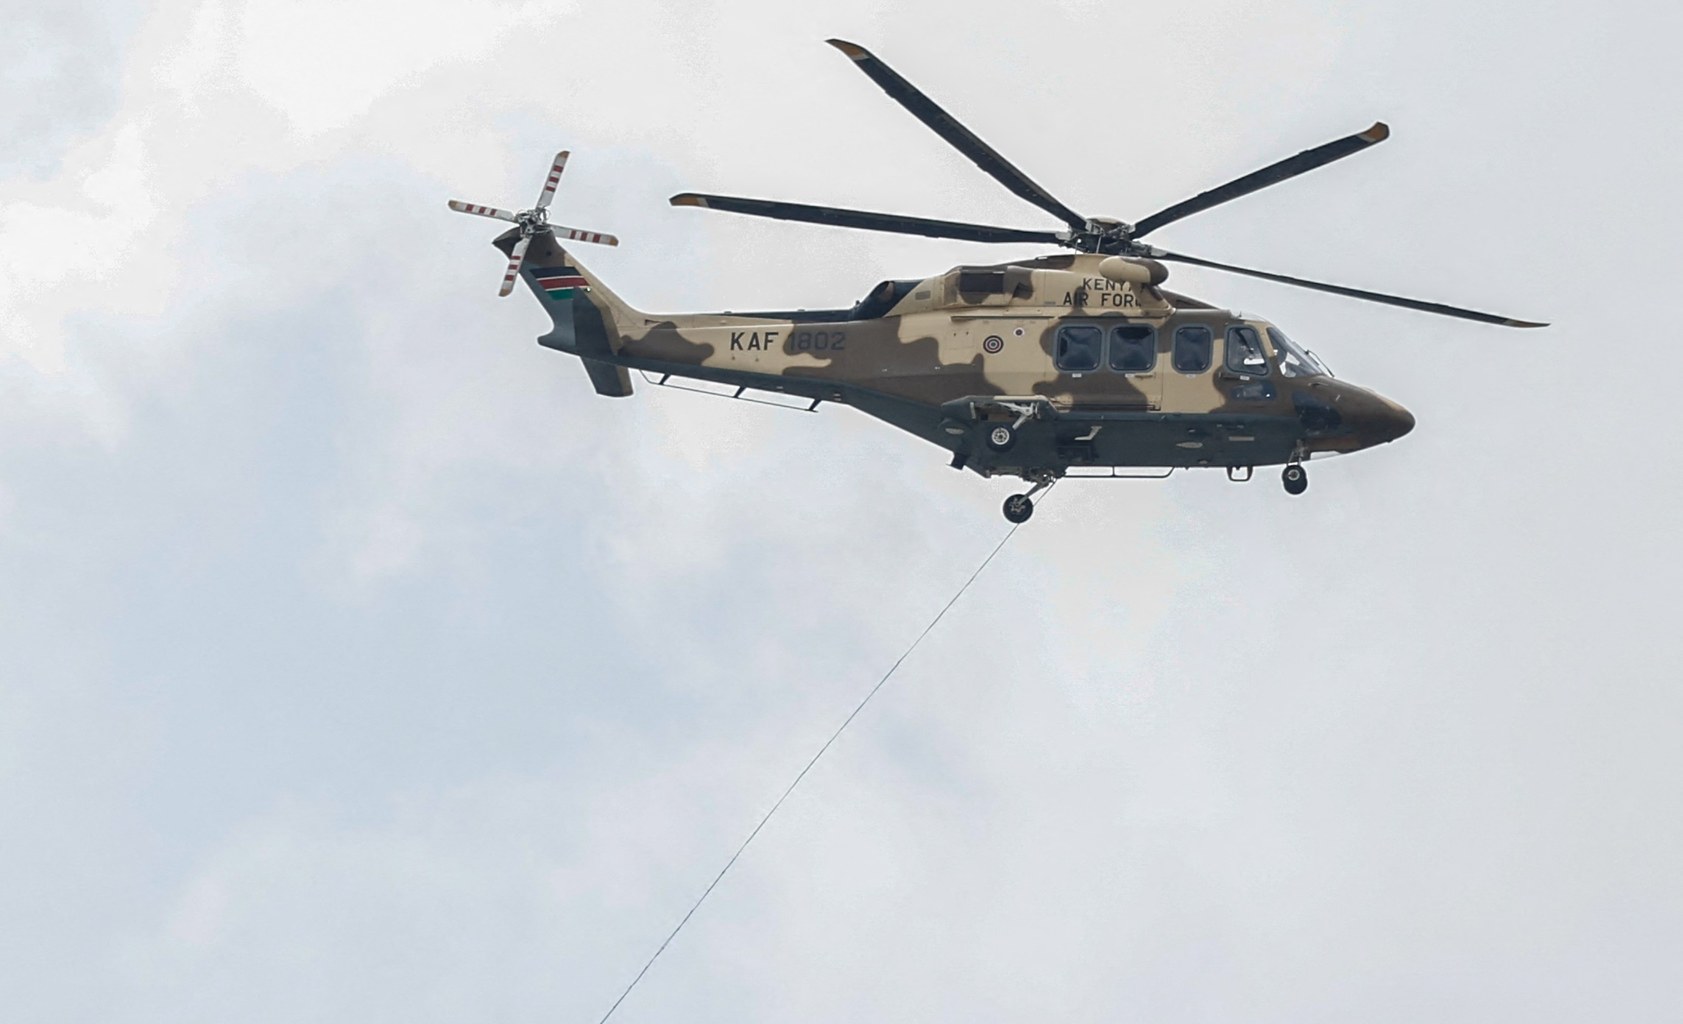 katastrofa helikoptera. nie żyje naczelny dowódca armii